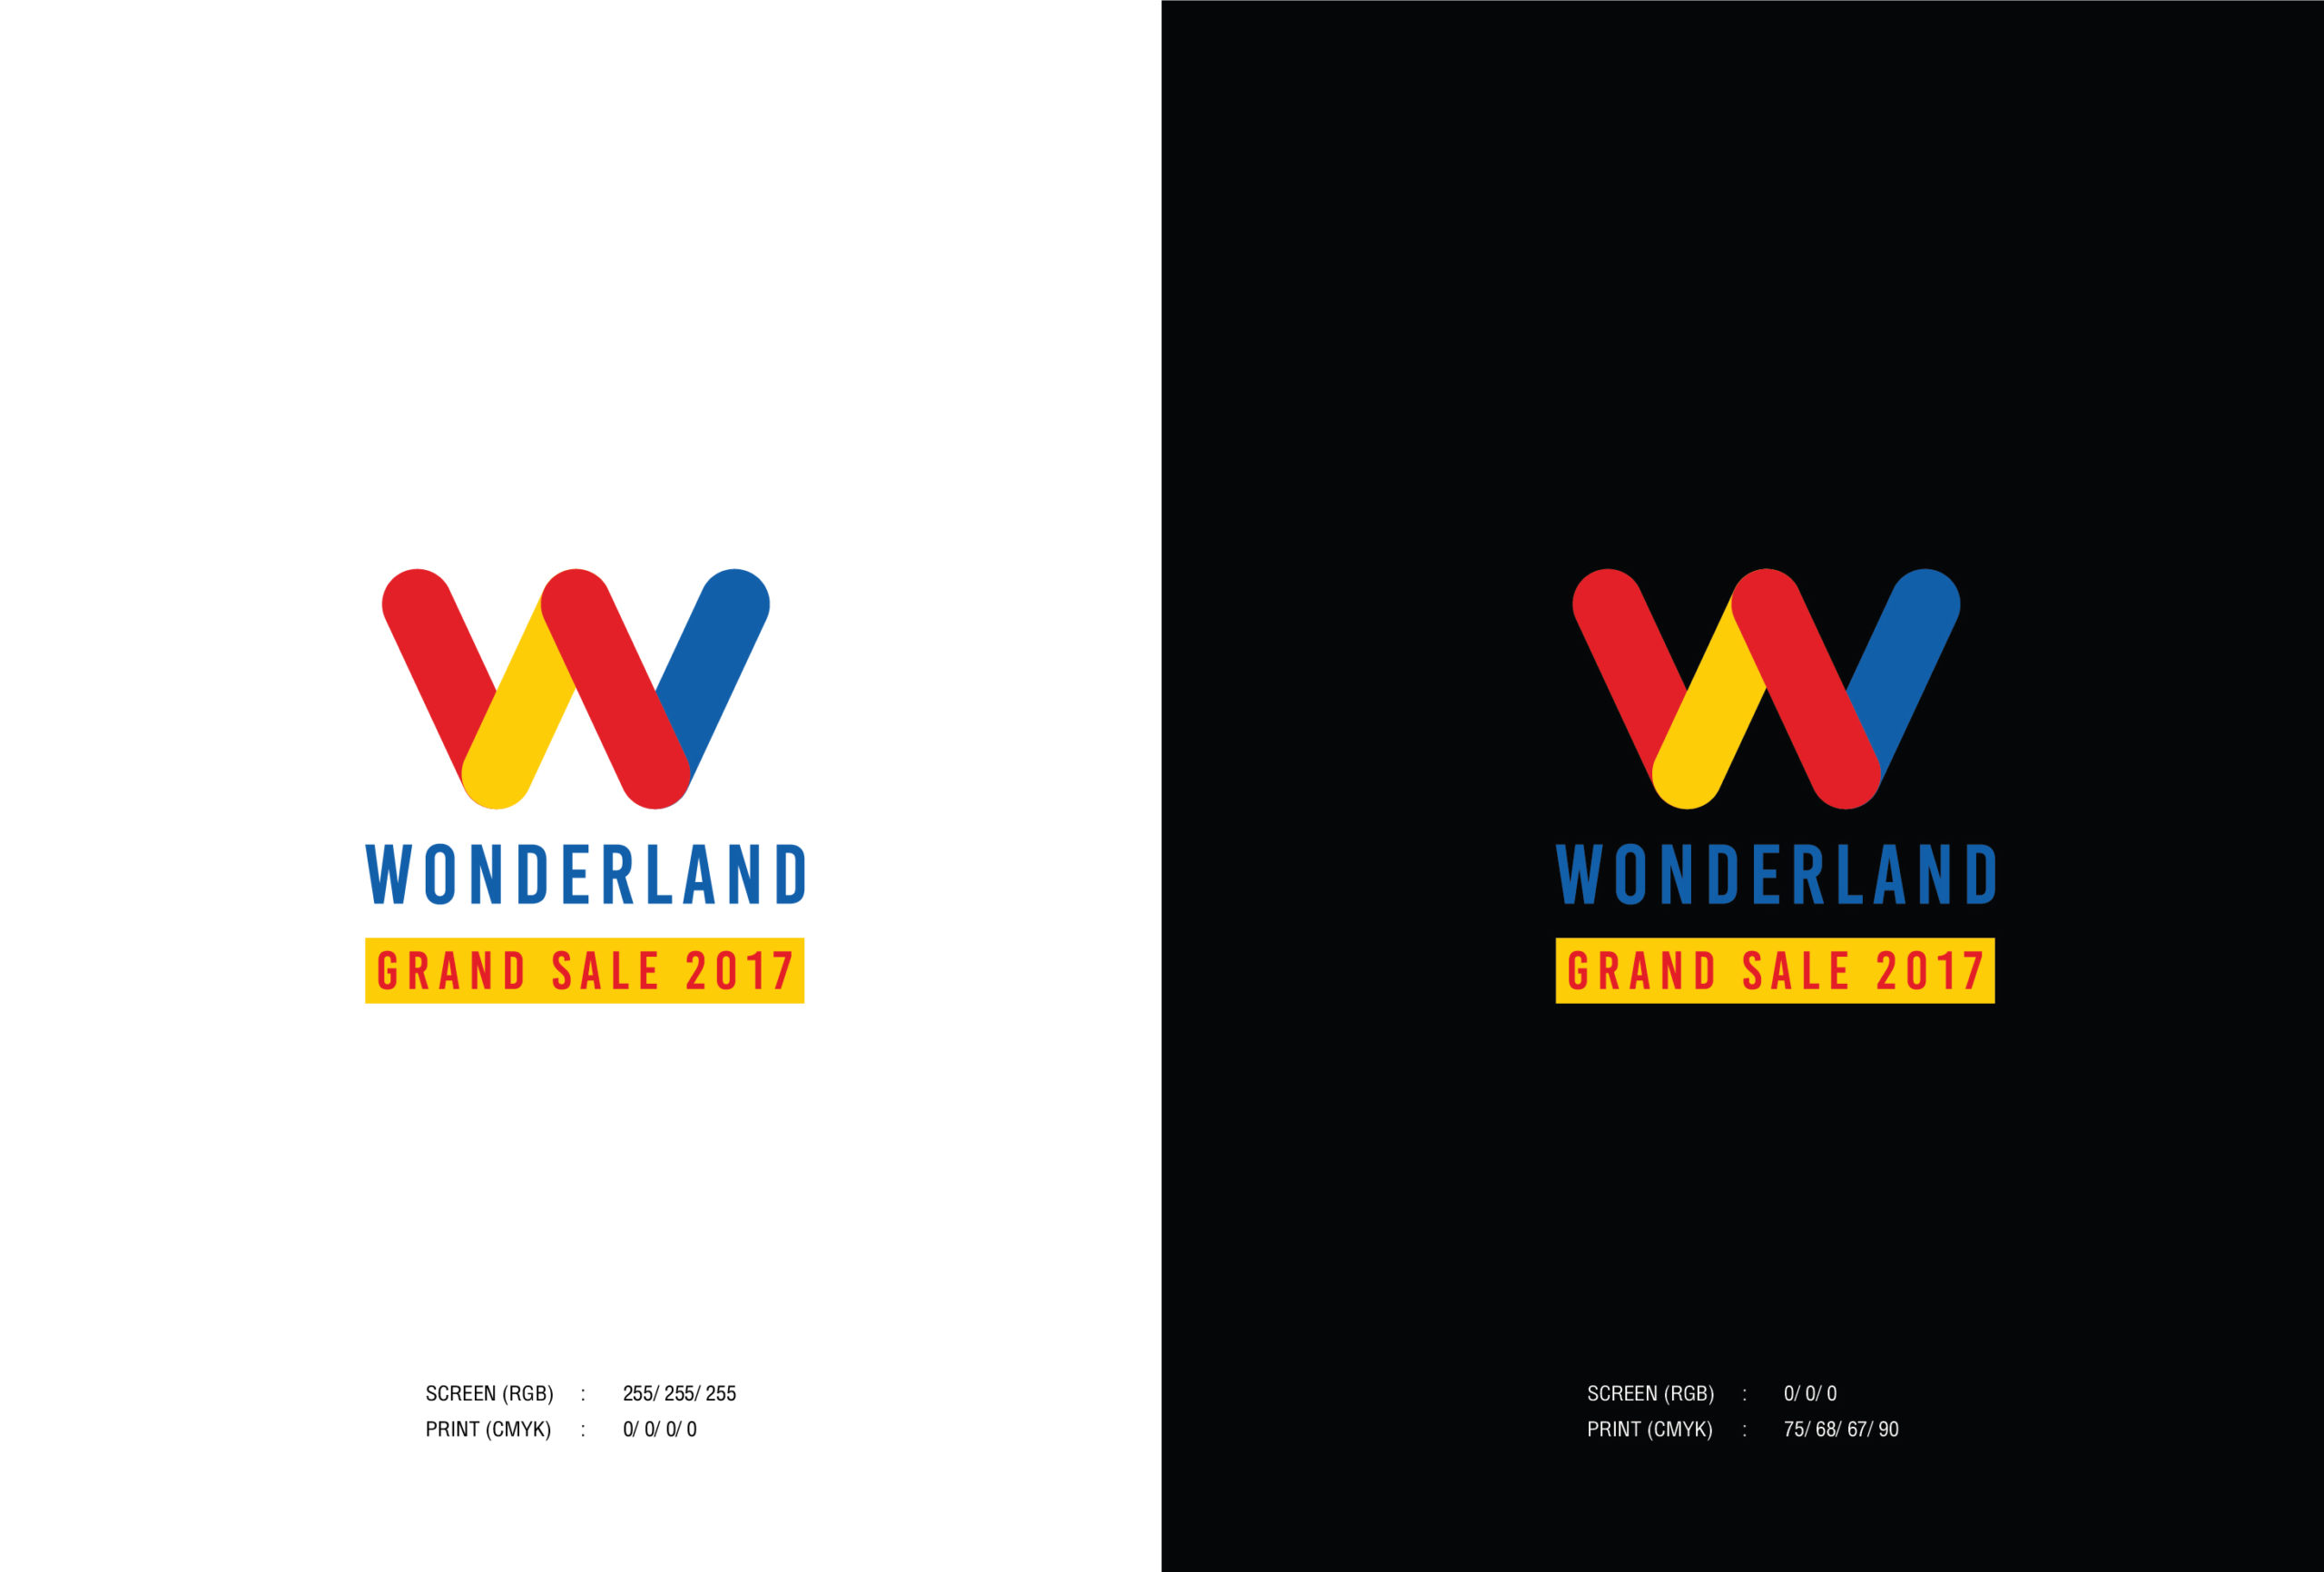 Wonderland Grand Sale 2017 _for web-03